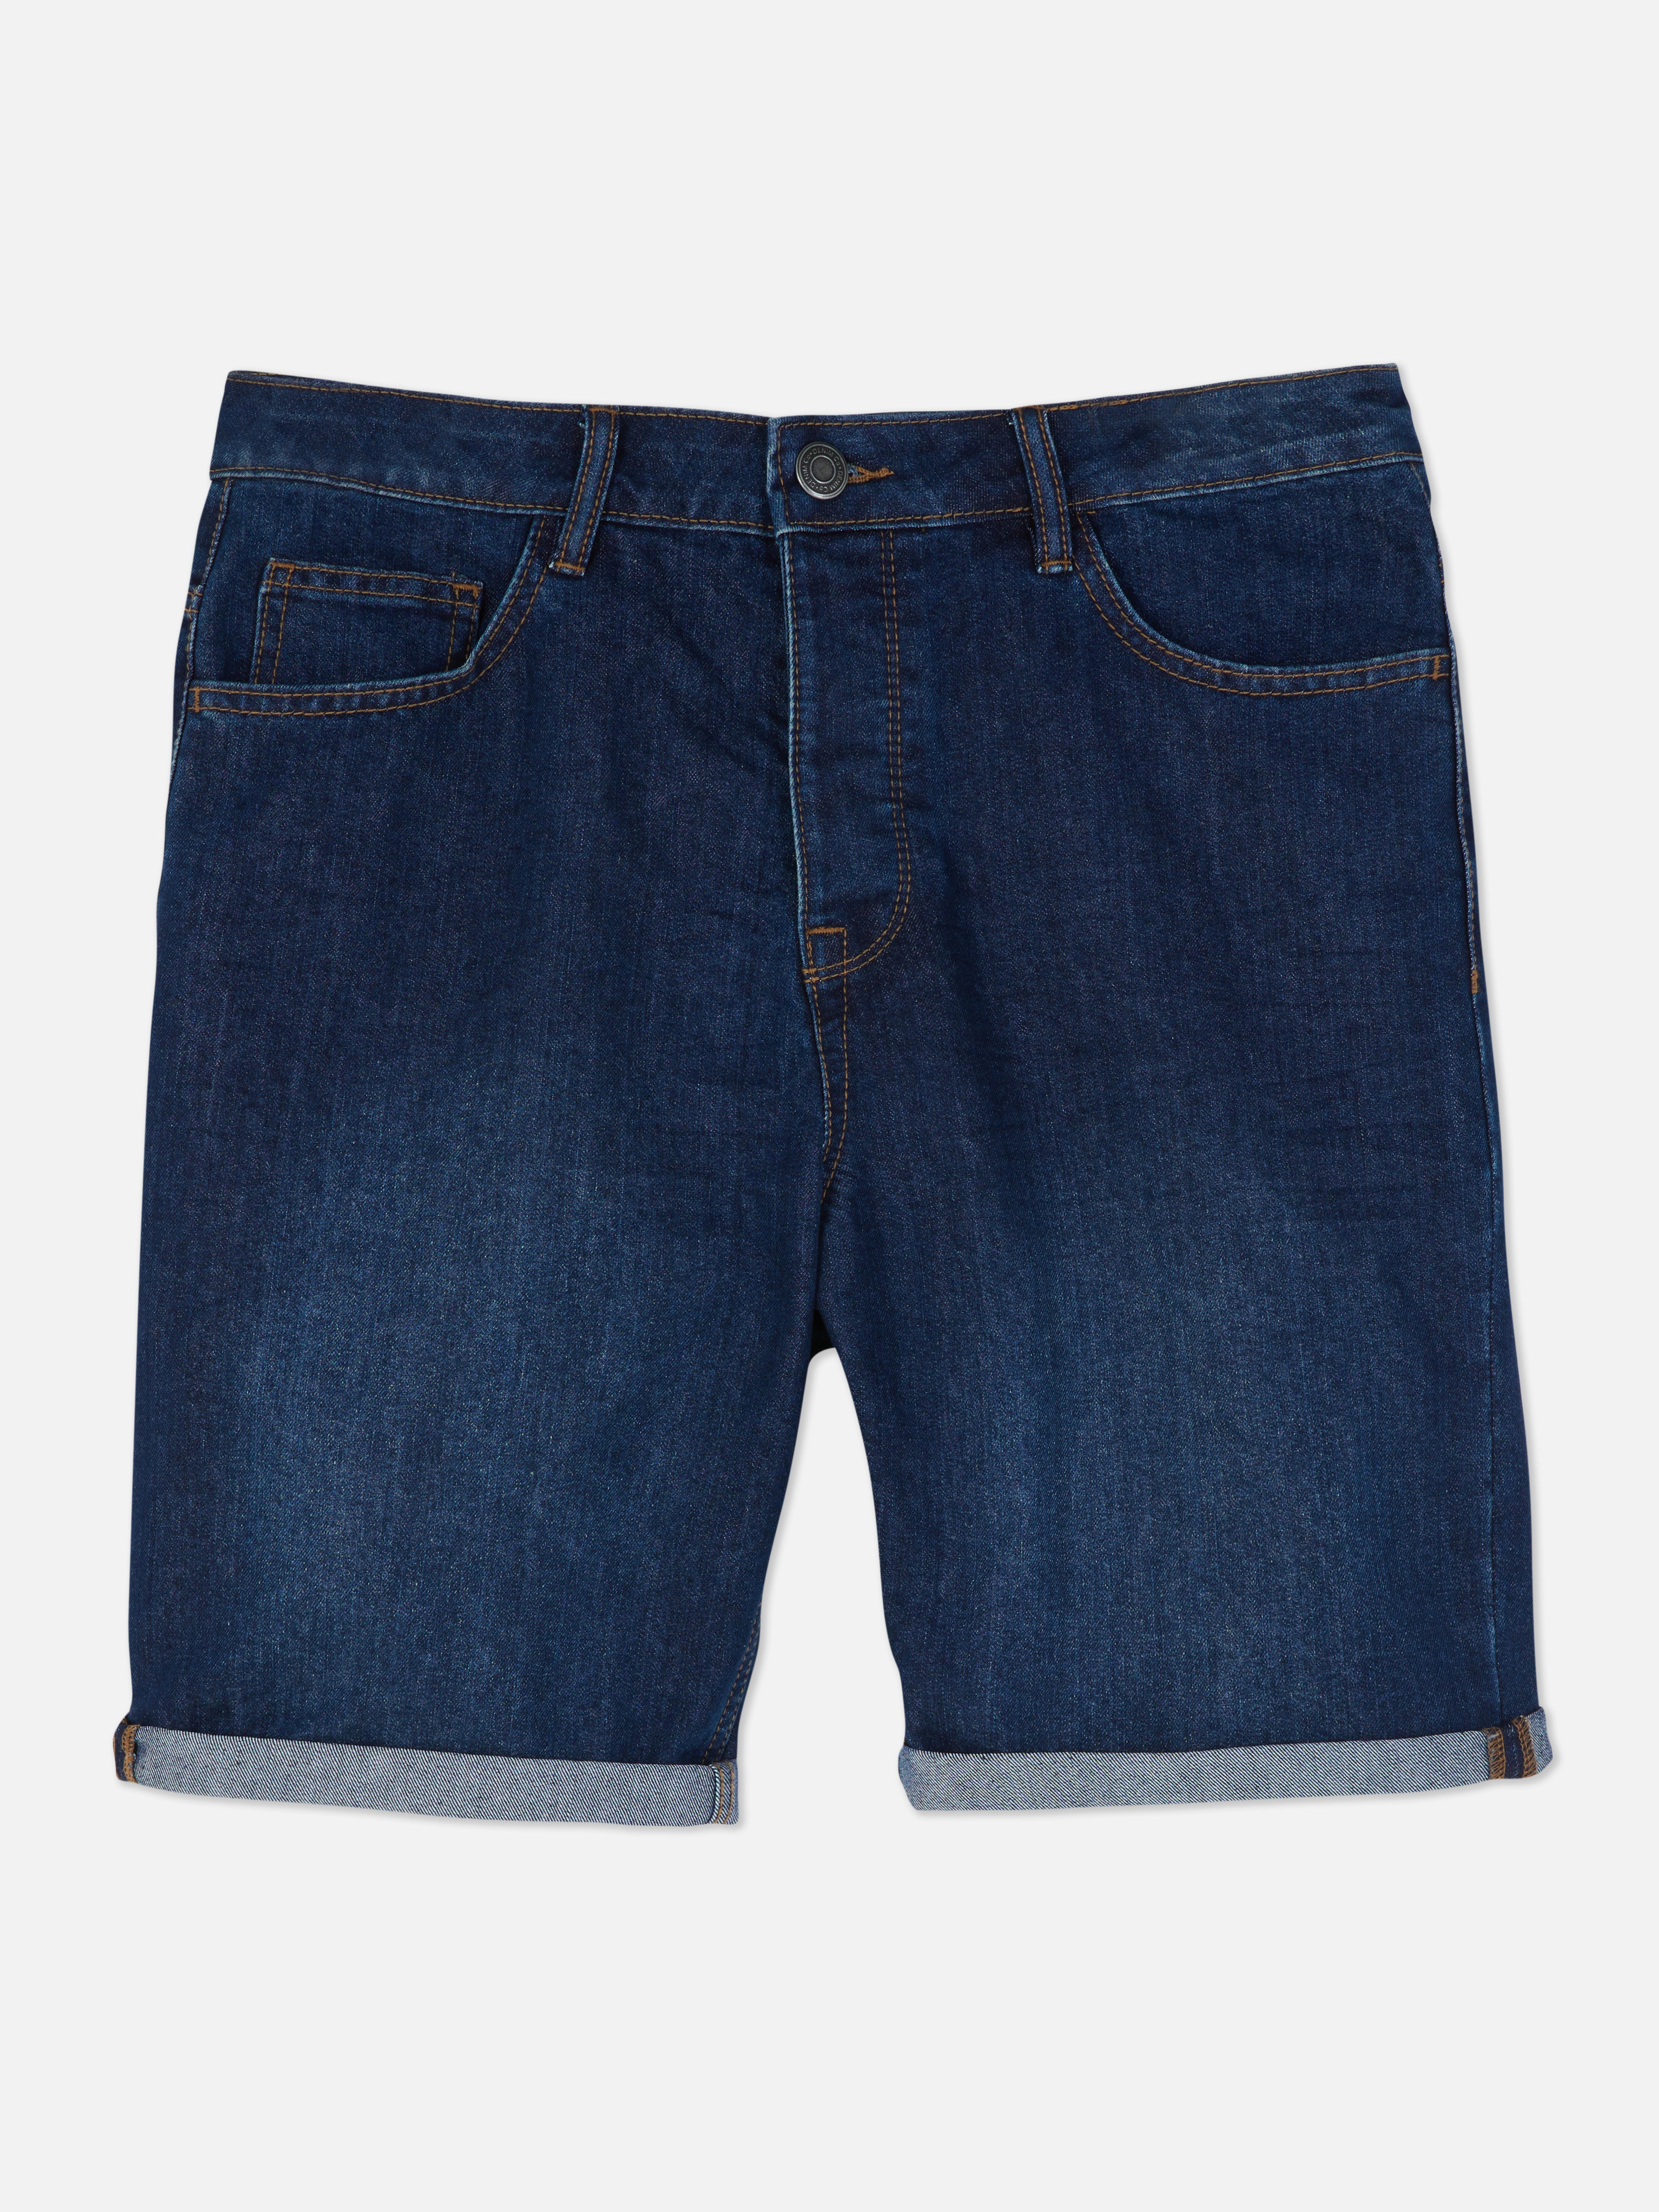 Vaqueros cortos | Pantalones cortos para hombre | Ropa para | línea de moda masculina | Todos los productos Primark | Primark España